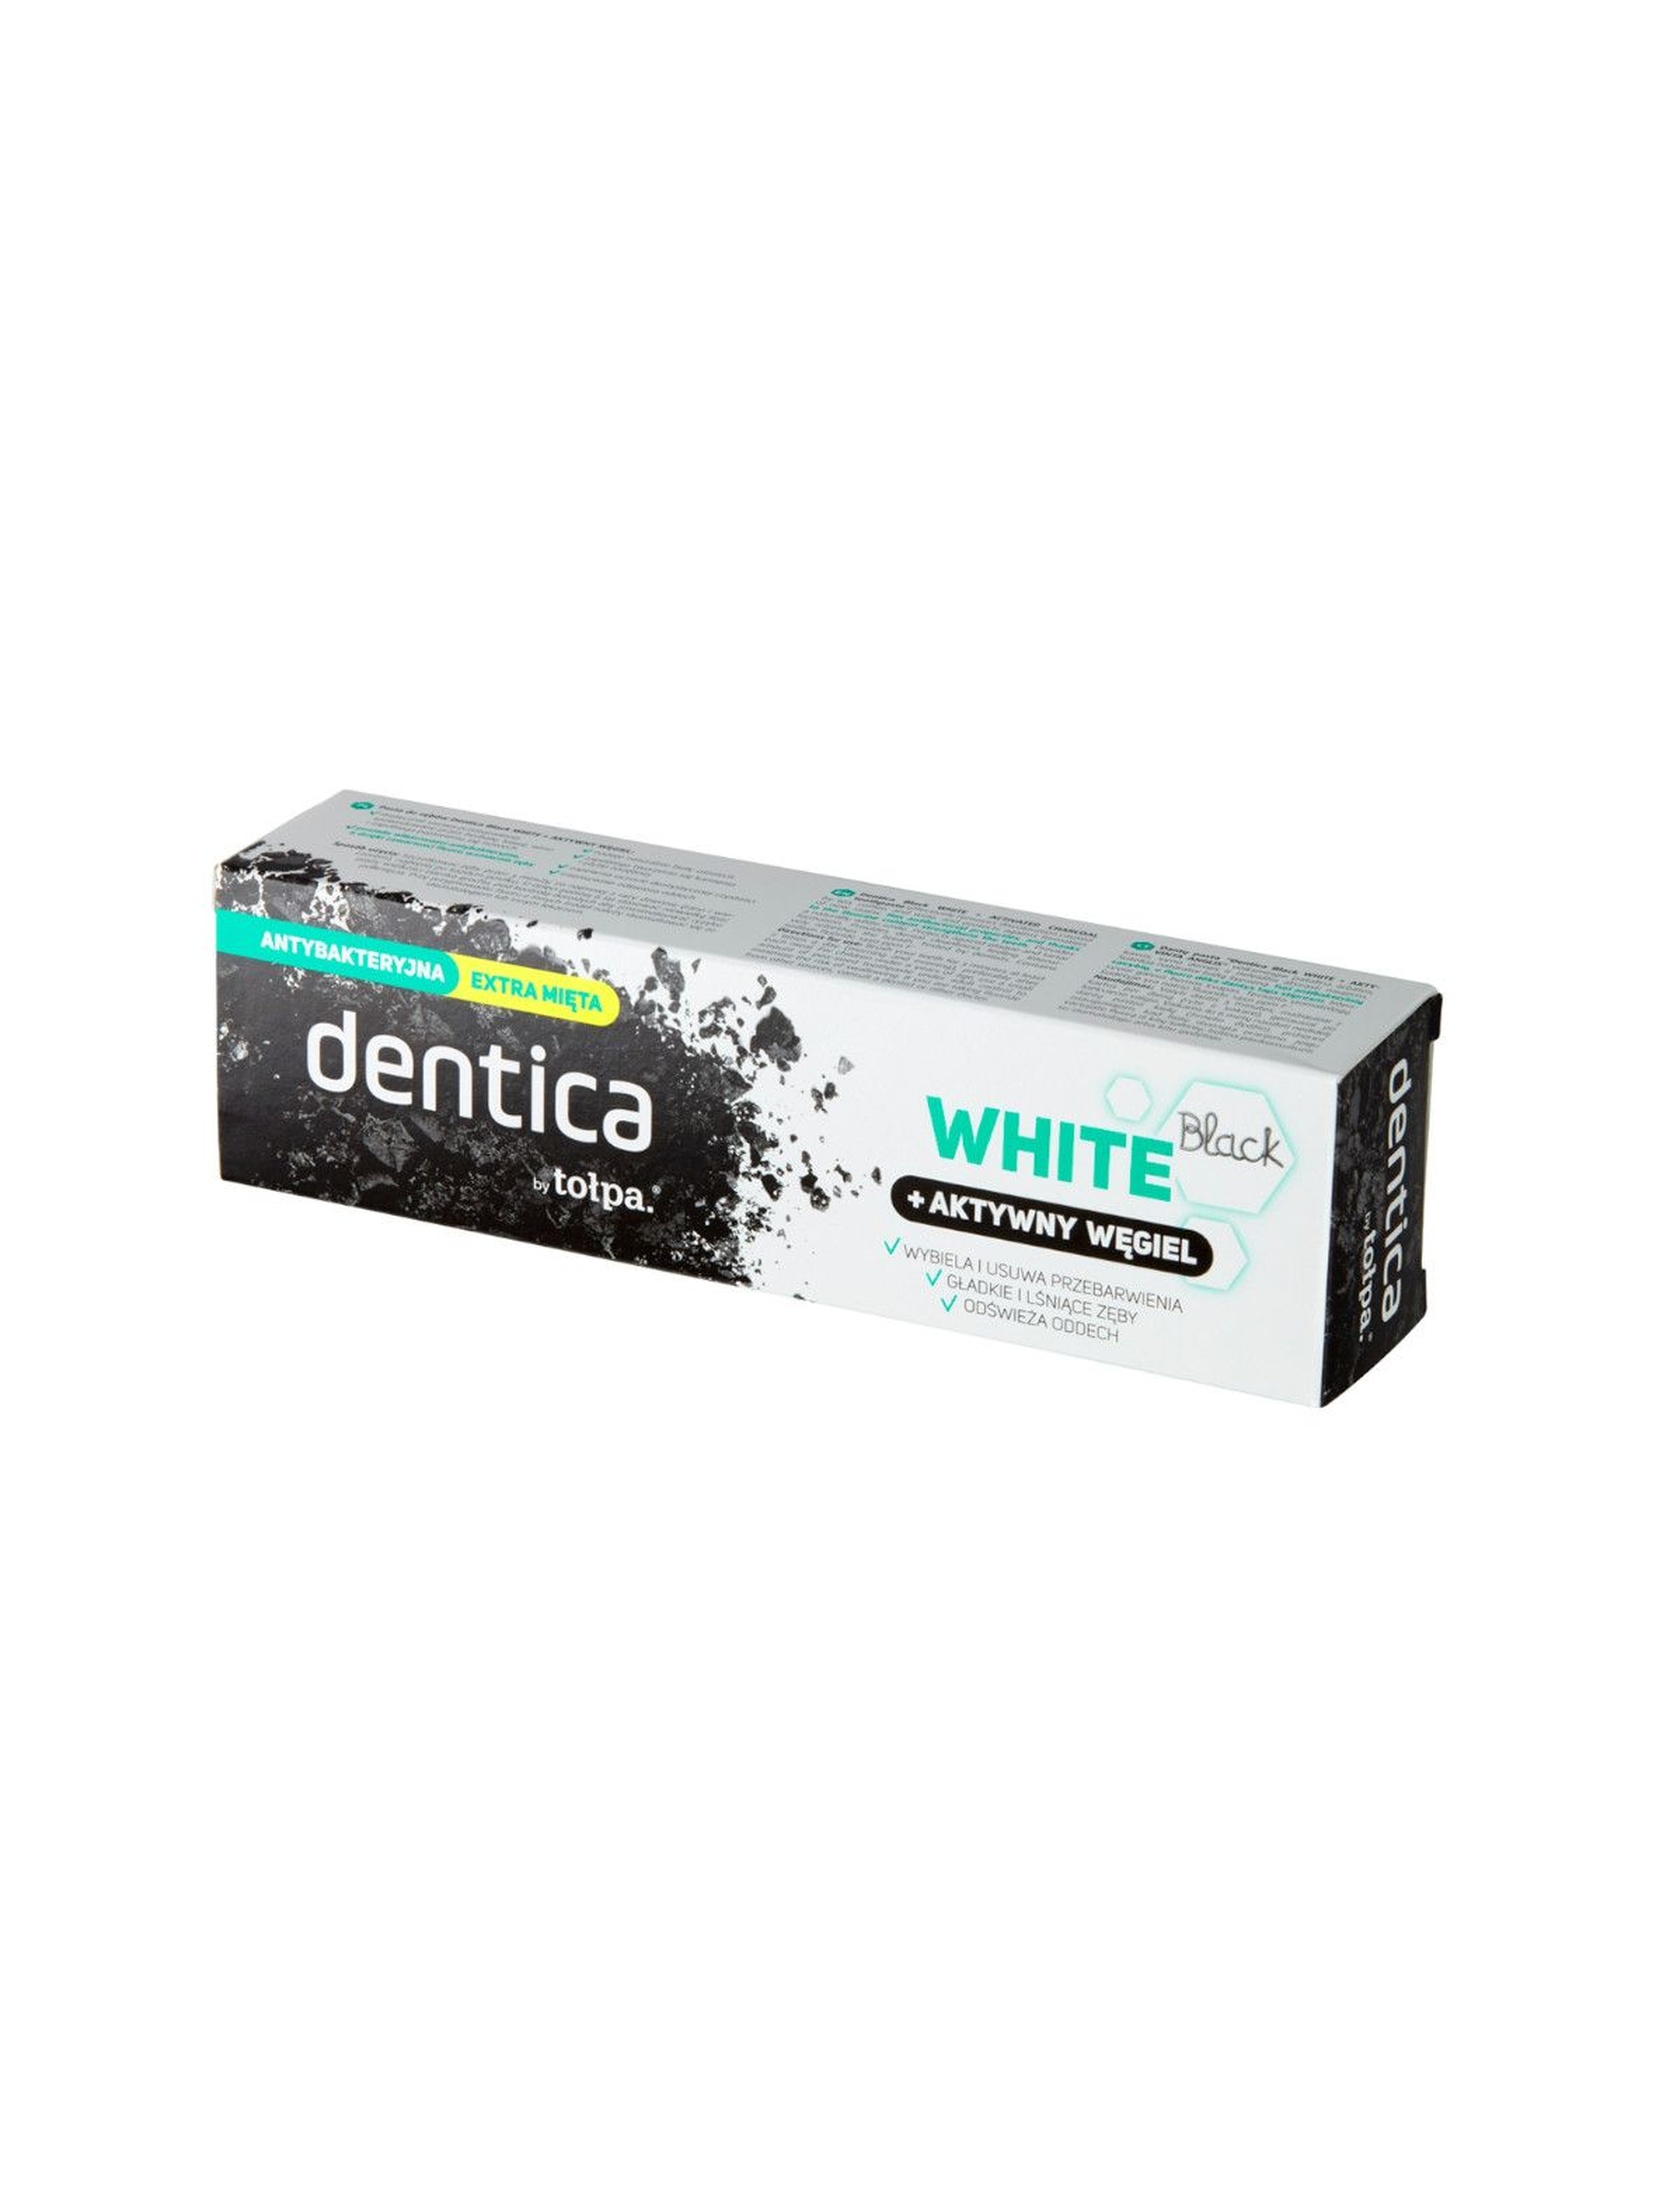 Dentica by tołpa pasta do zębów z aktywnym węglem - black white 75 ml